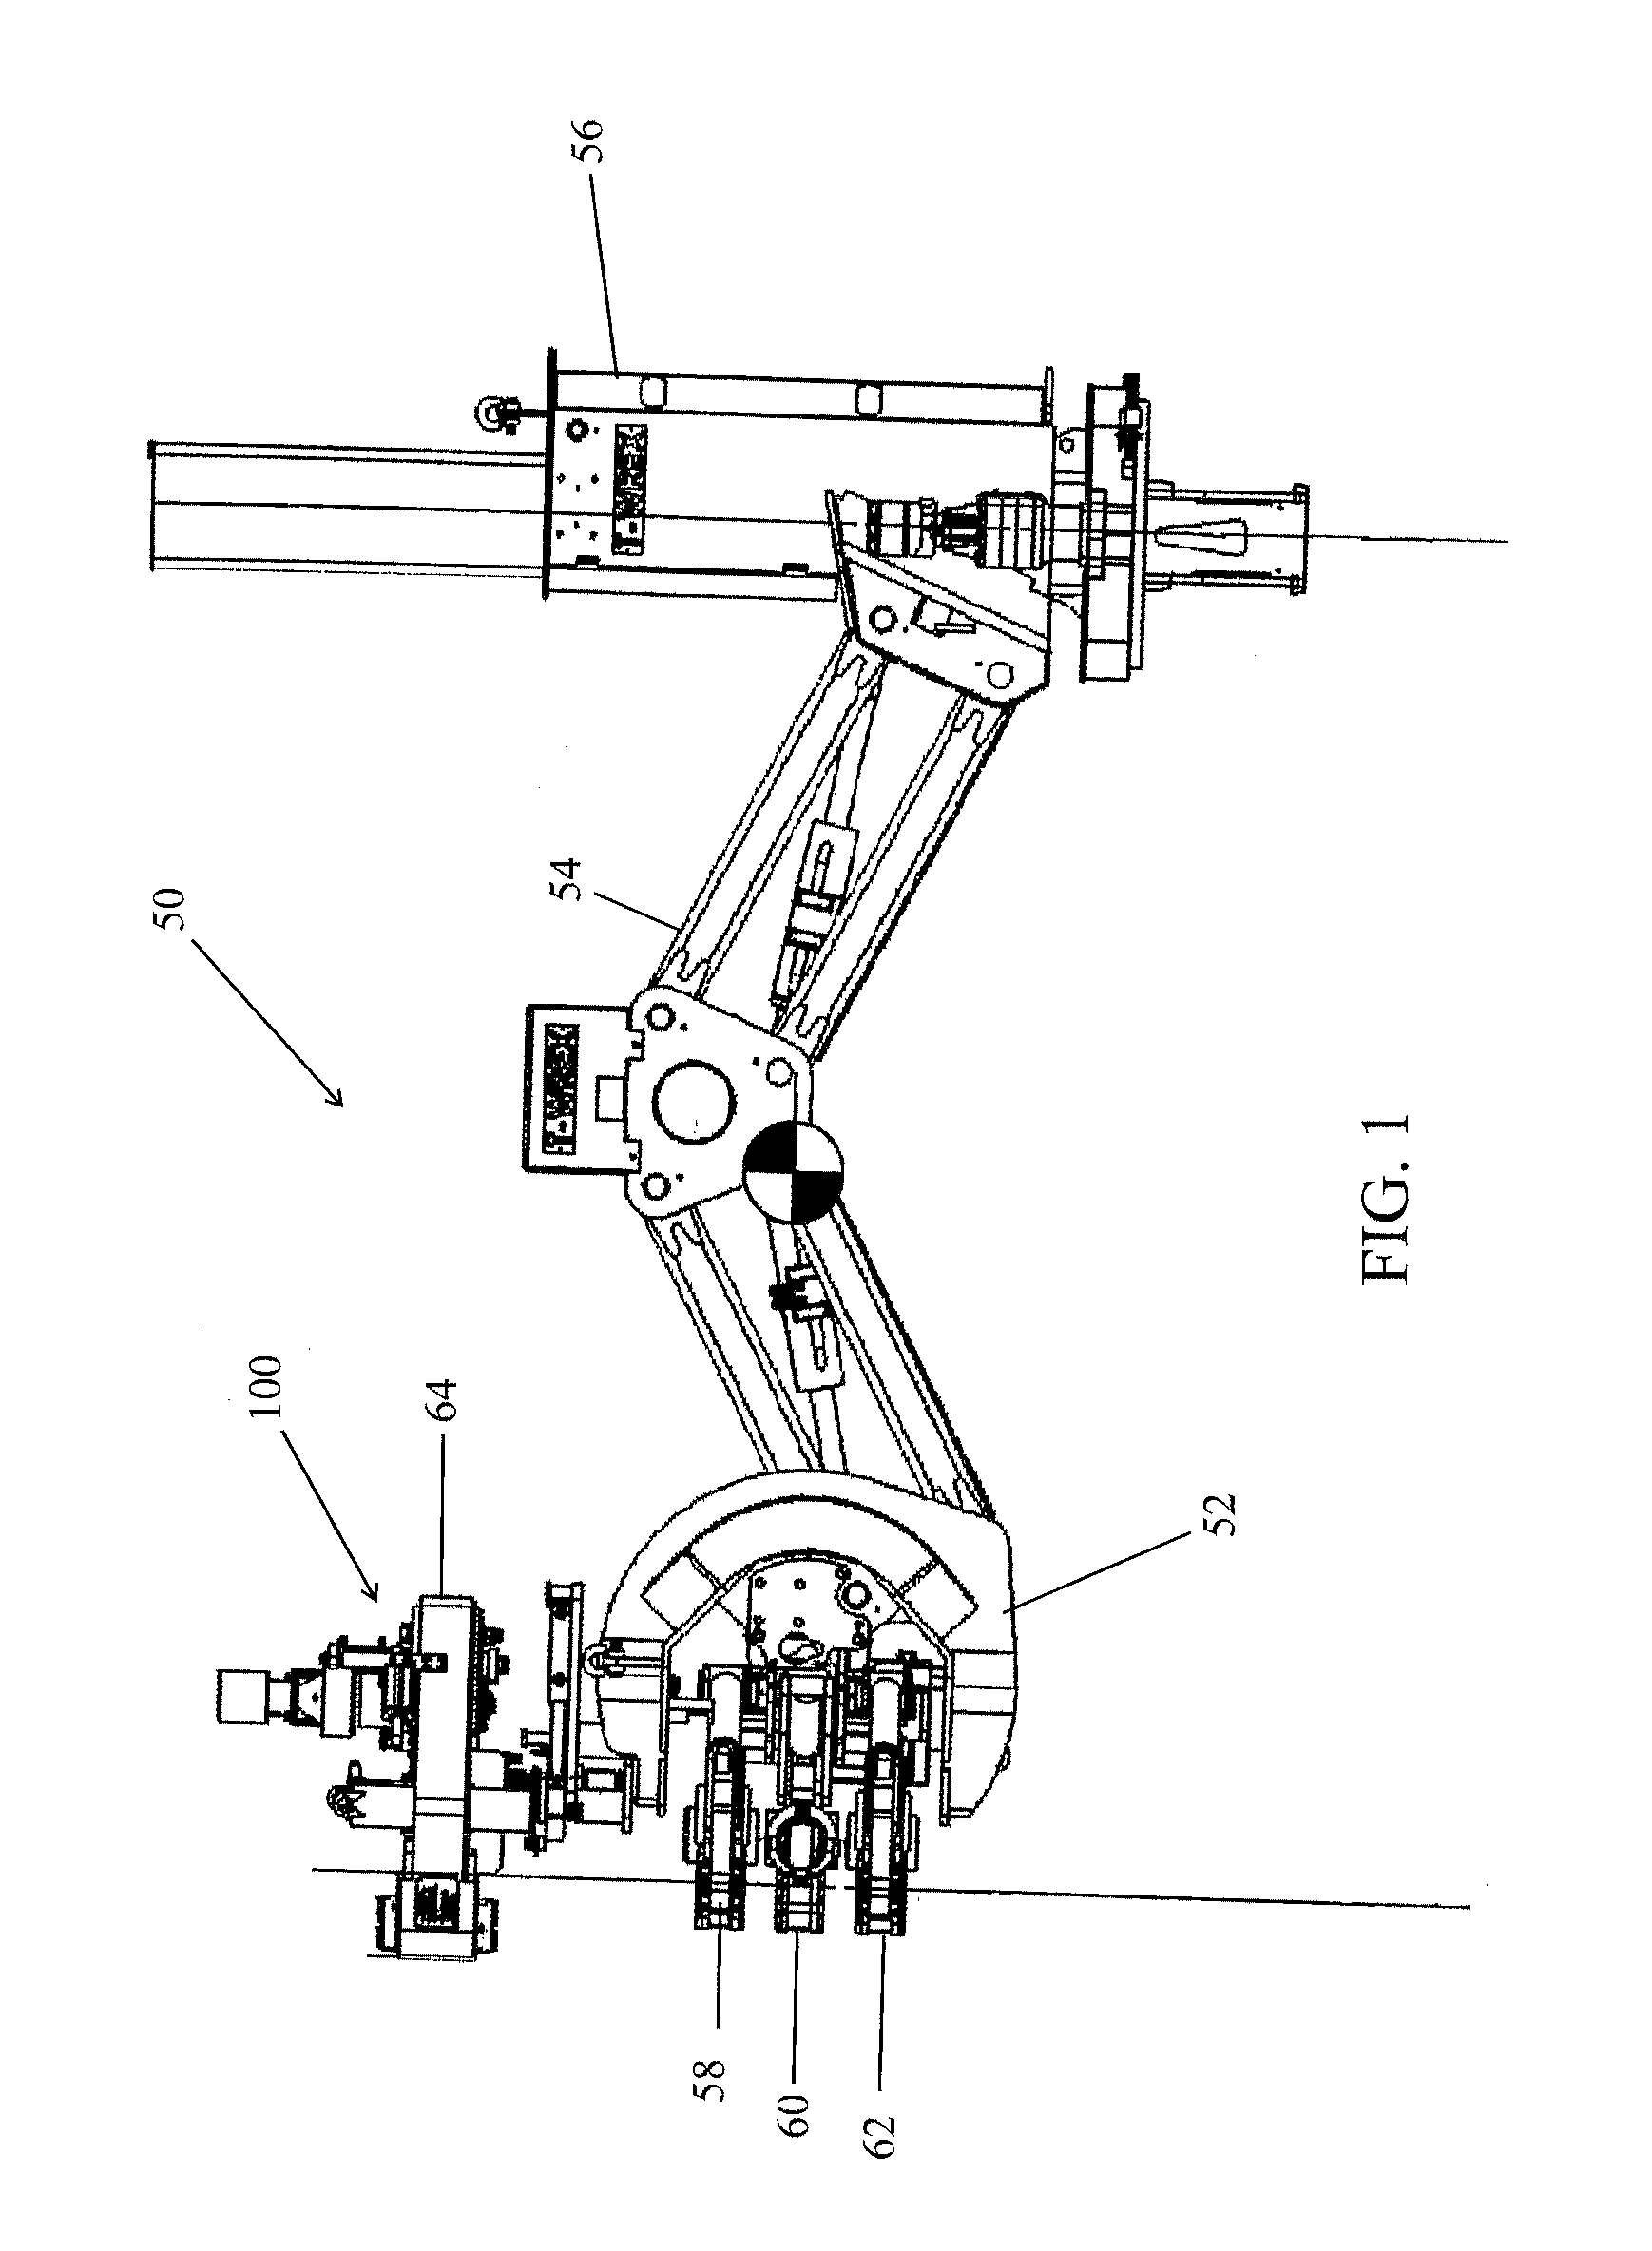 Self-adjusting pipe spinner